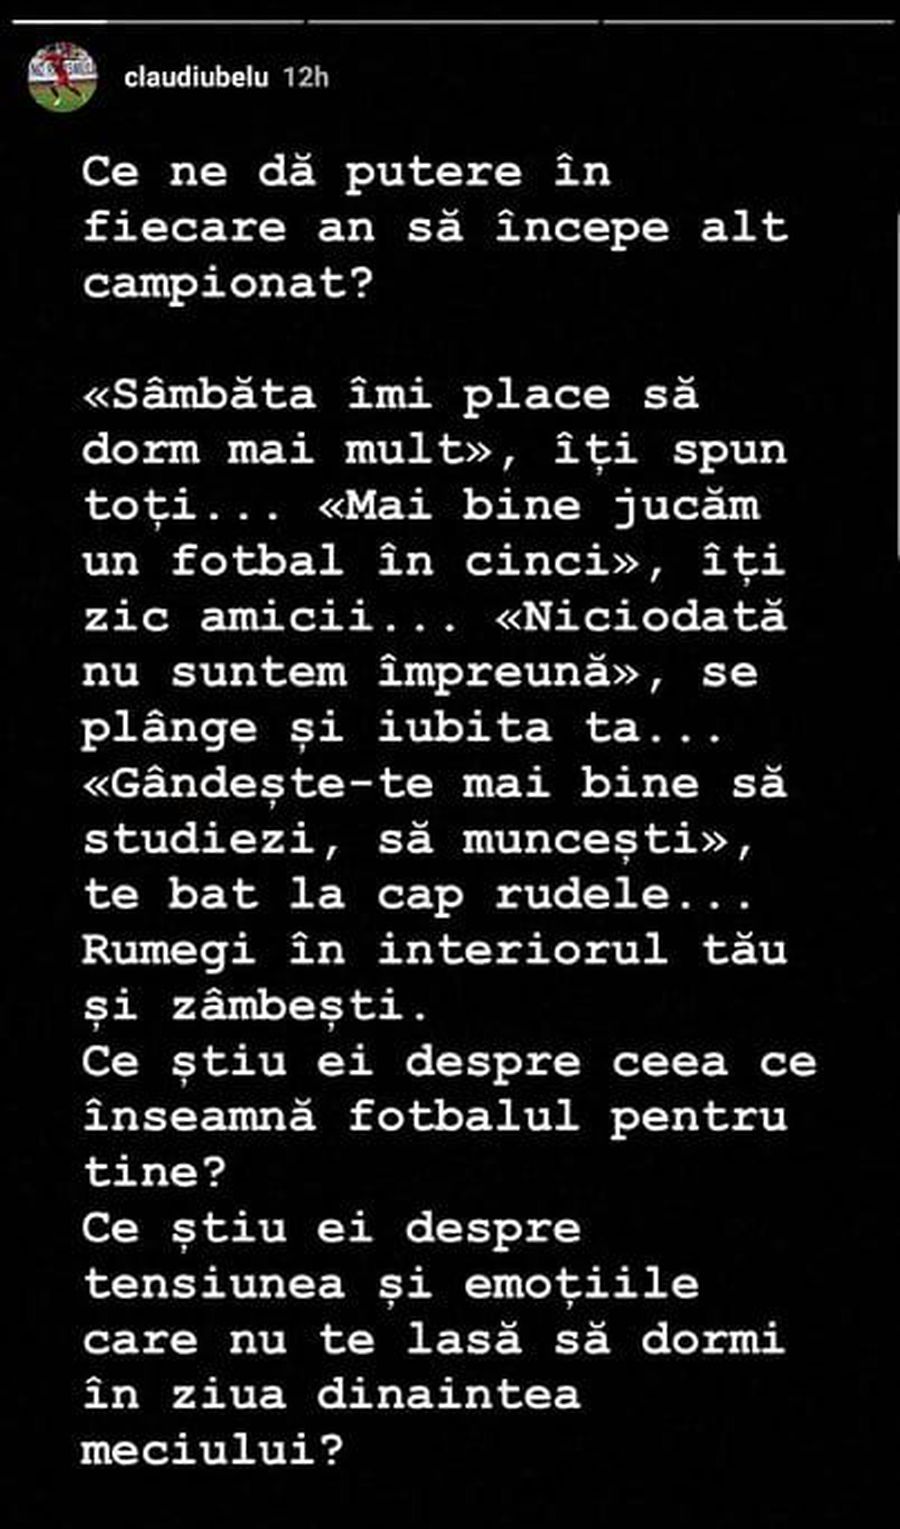 Claudiu Belu, jucătorul criticat de Becali, expune sacrificiile prin care trece un fotbalist: „Ce știu ei despre asta?”